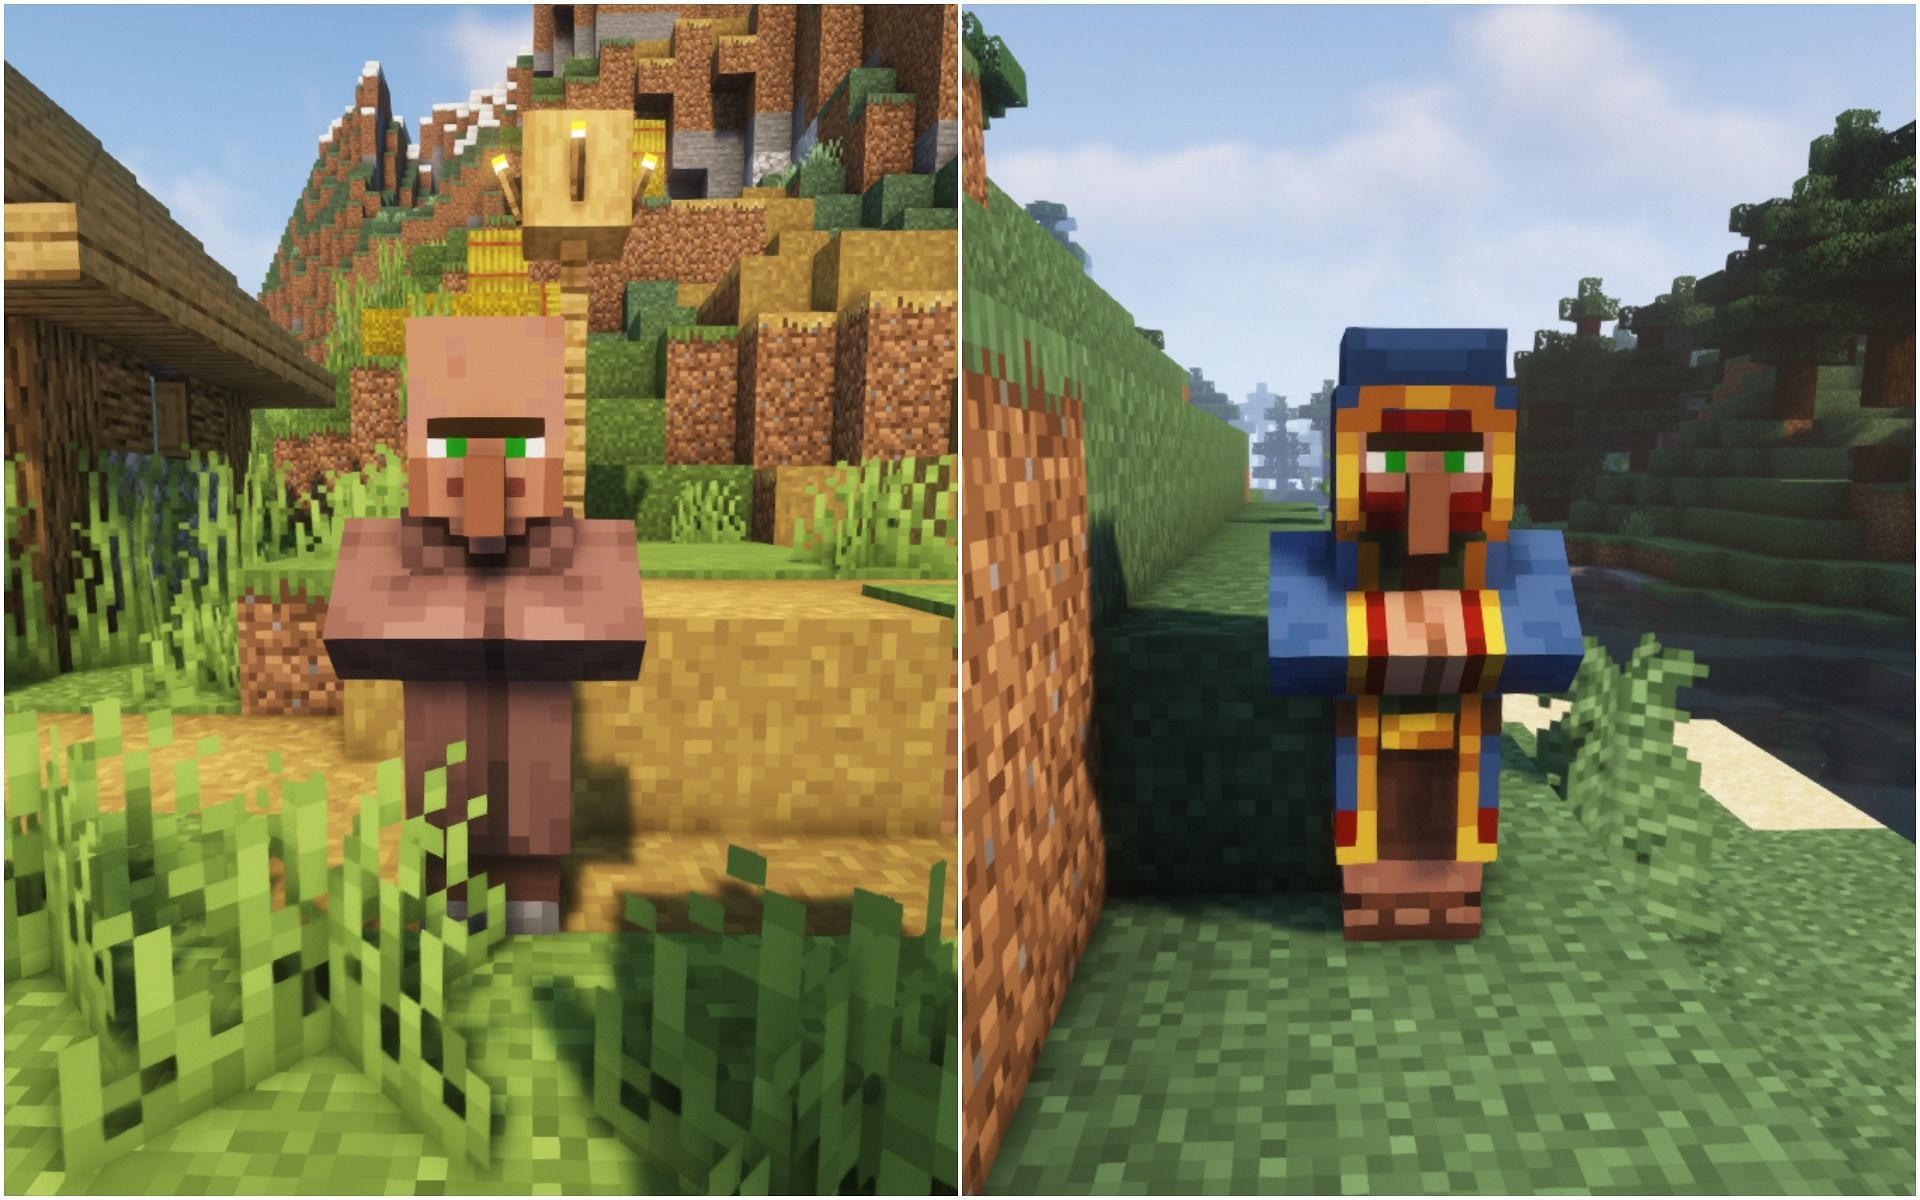 Villager vs. Wandering trader (Image via Minecraft)